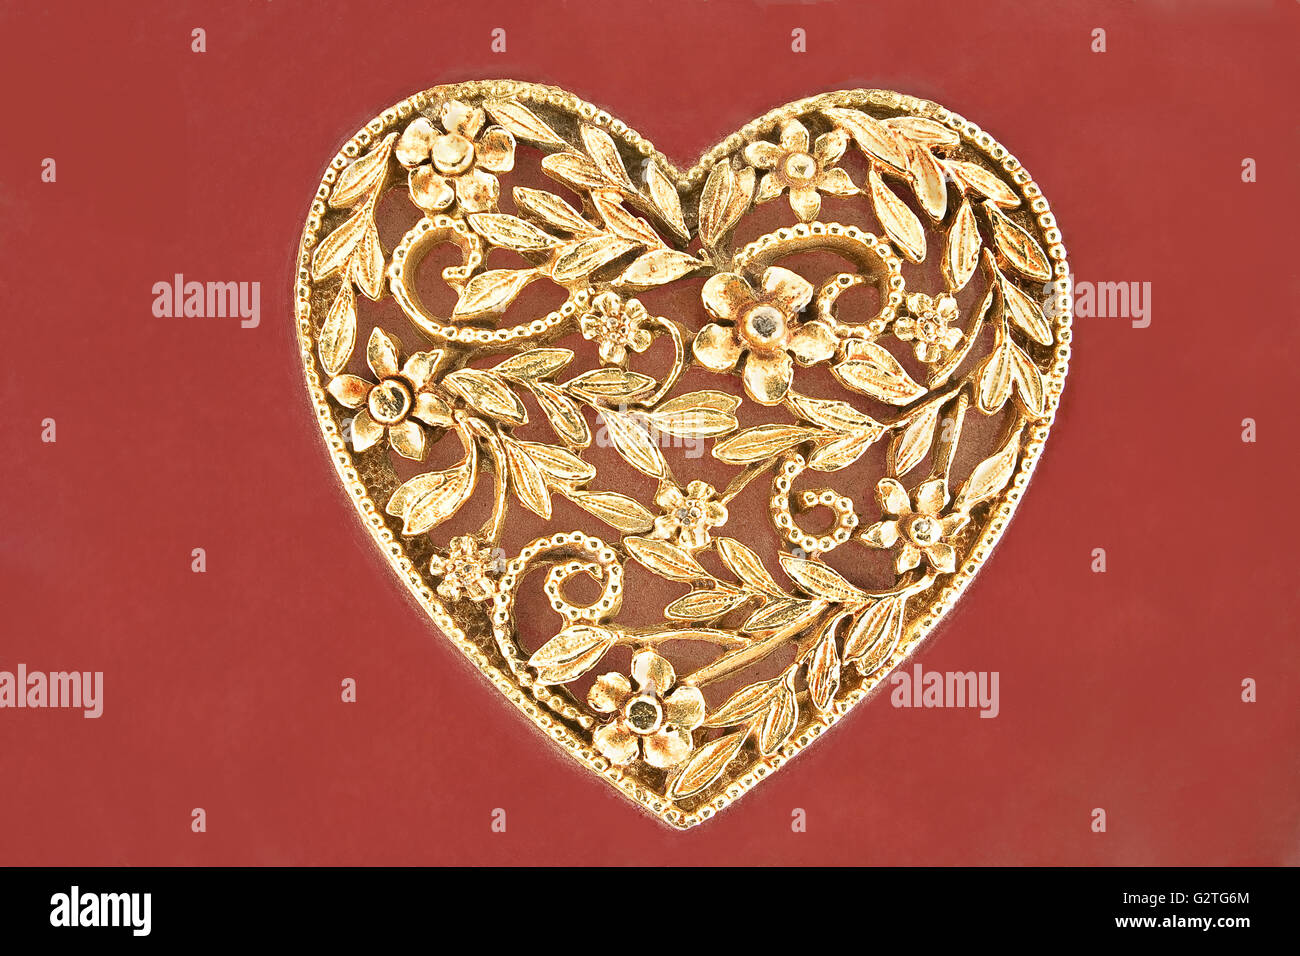 Golden Heart Schmuck auf rotem Grund Stockfoto